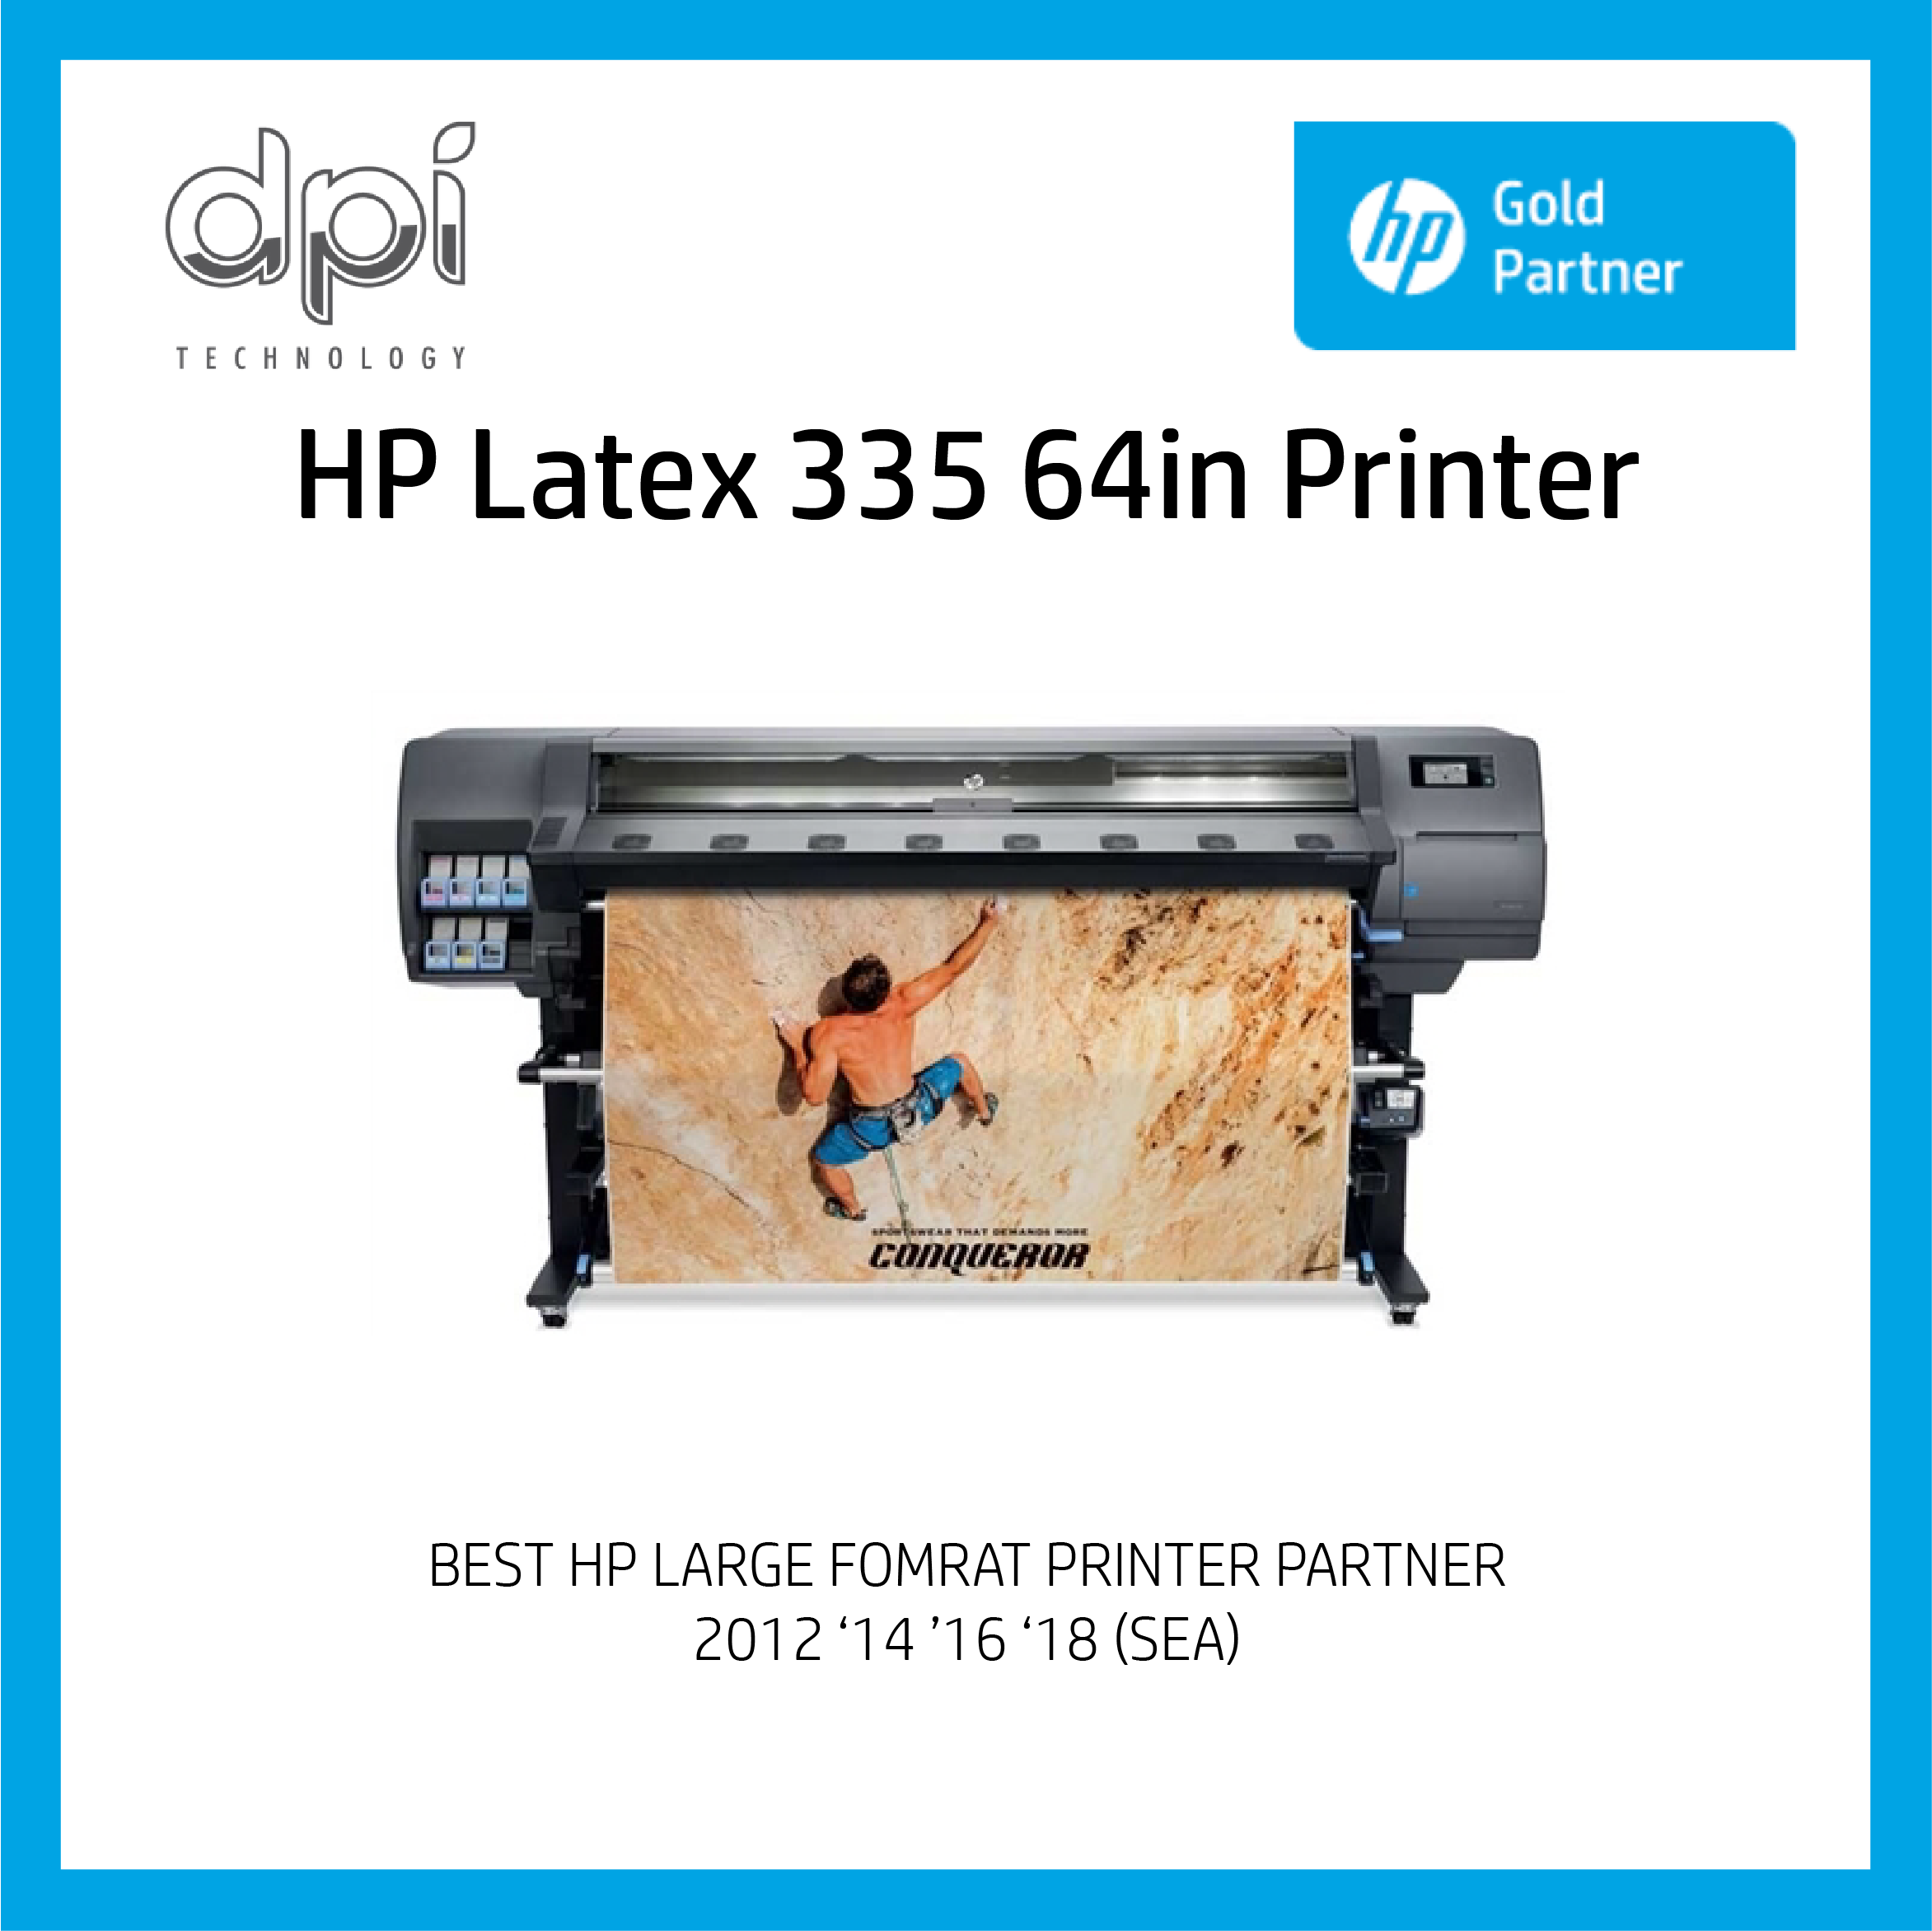 HP Latex 335 64in Printer